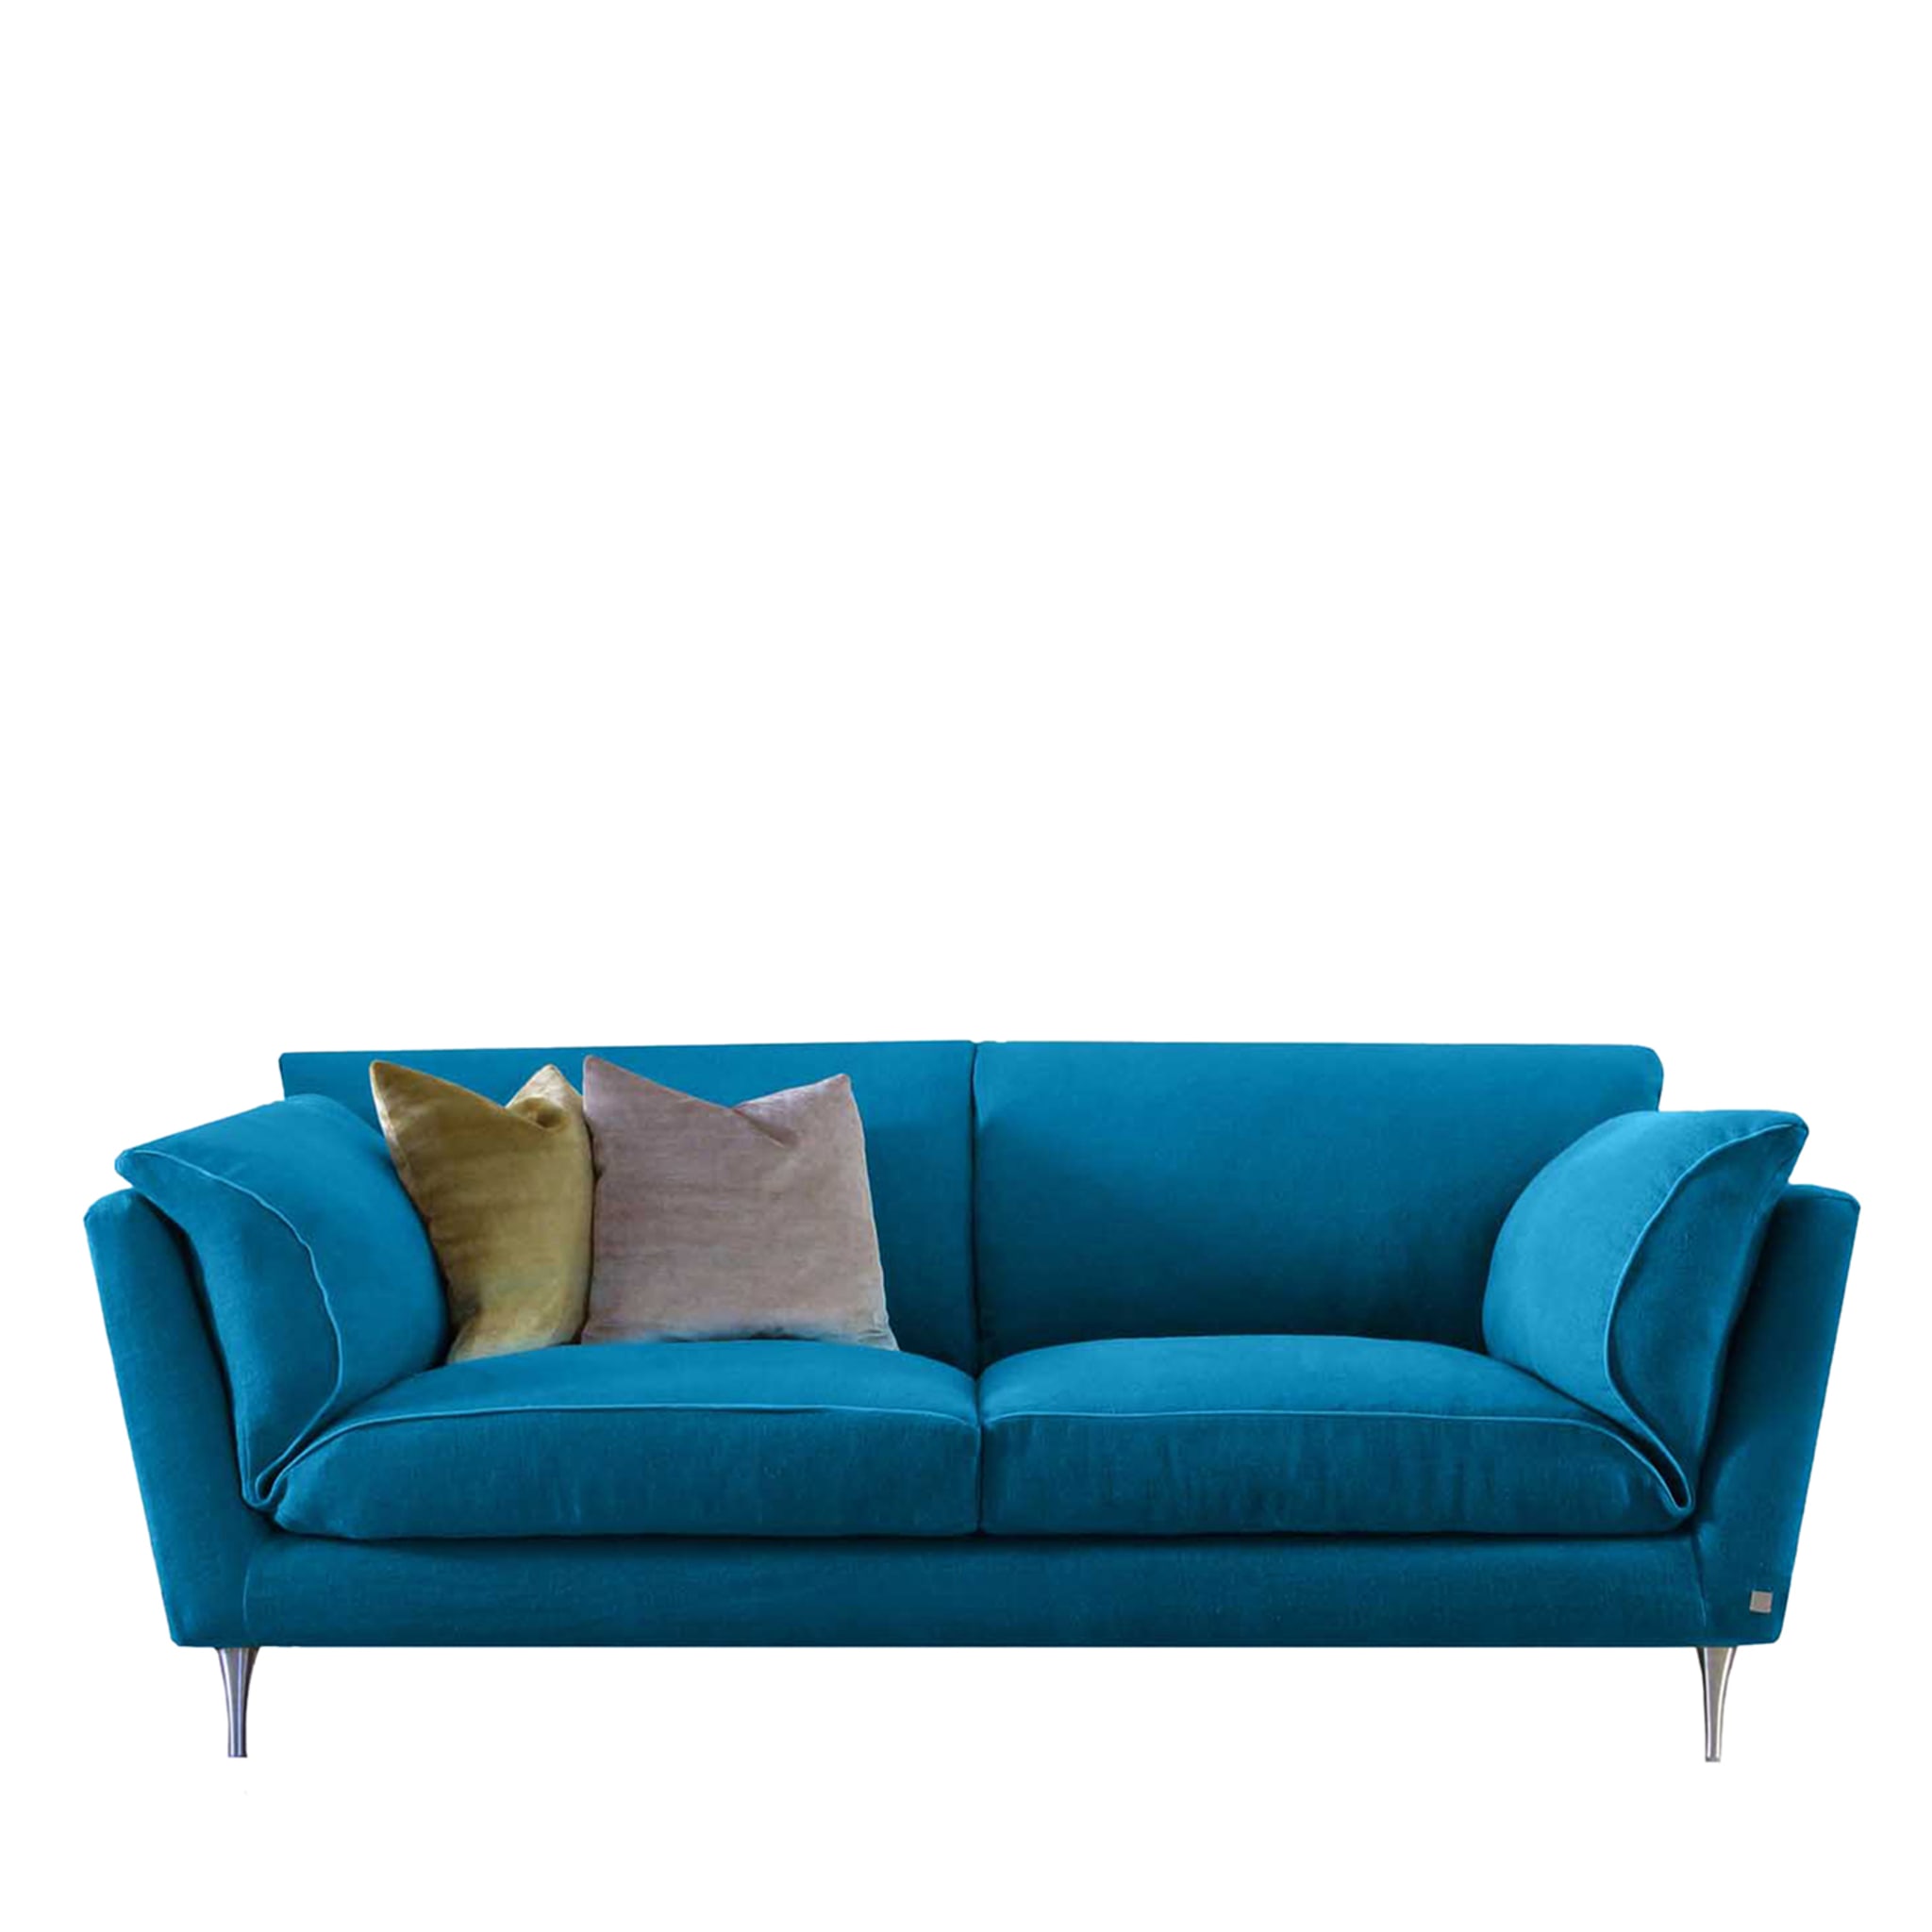 Casquet in Peacock Blue Sofa - Main view